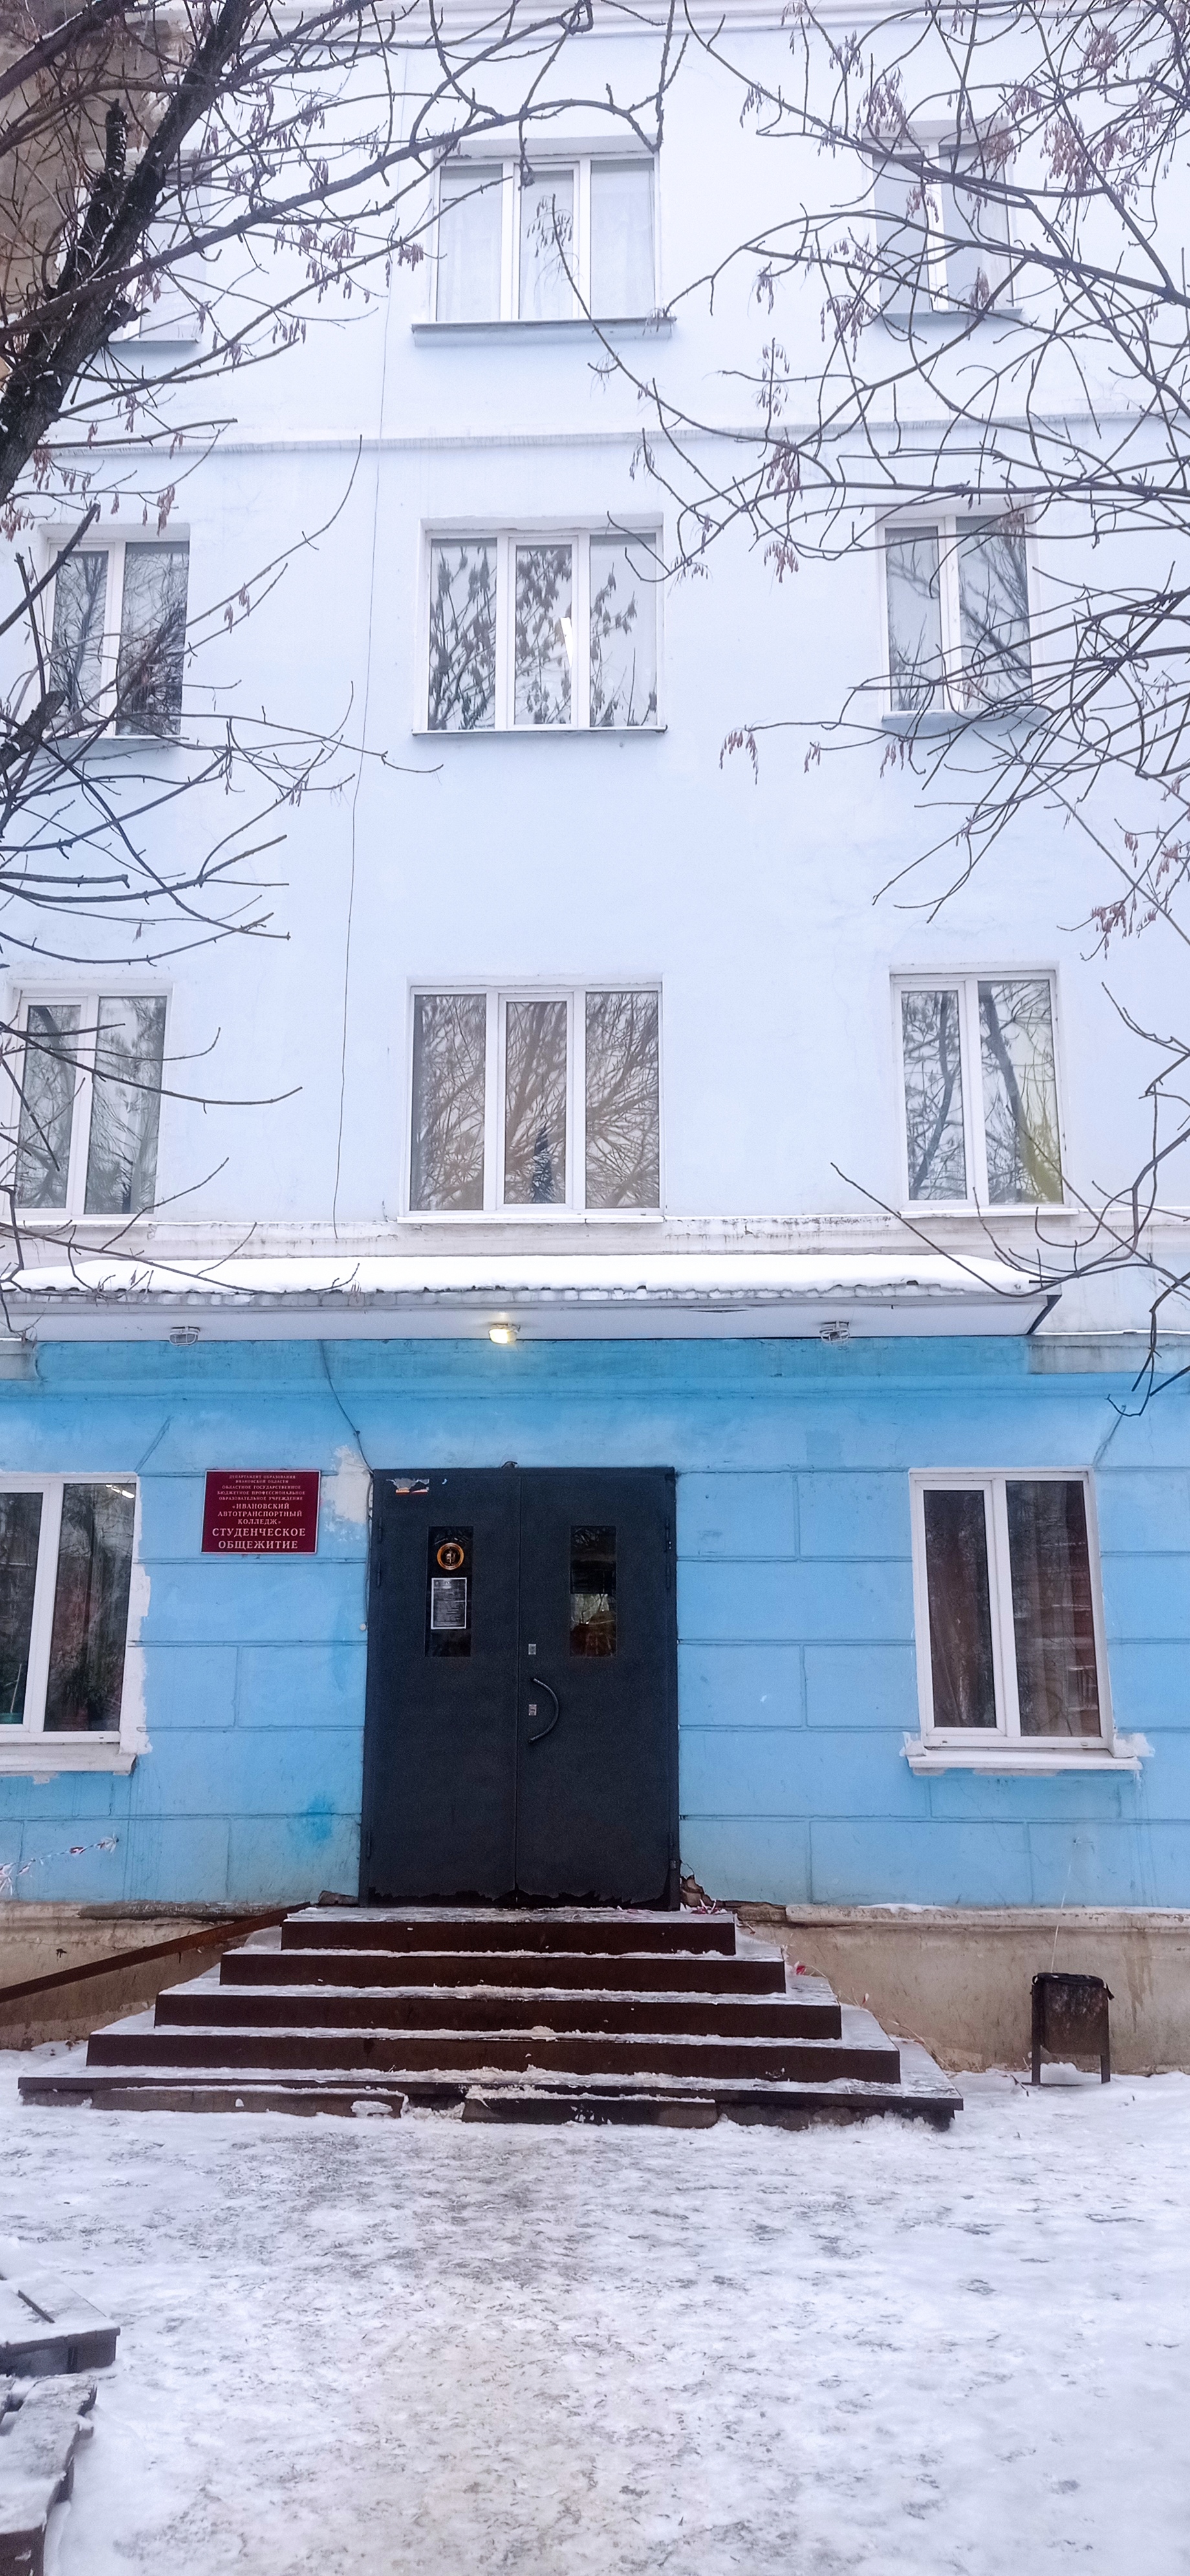 Автотранспортный колледж г. Иваново, общежитие, вход.